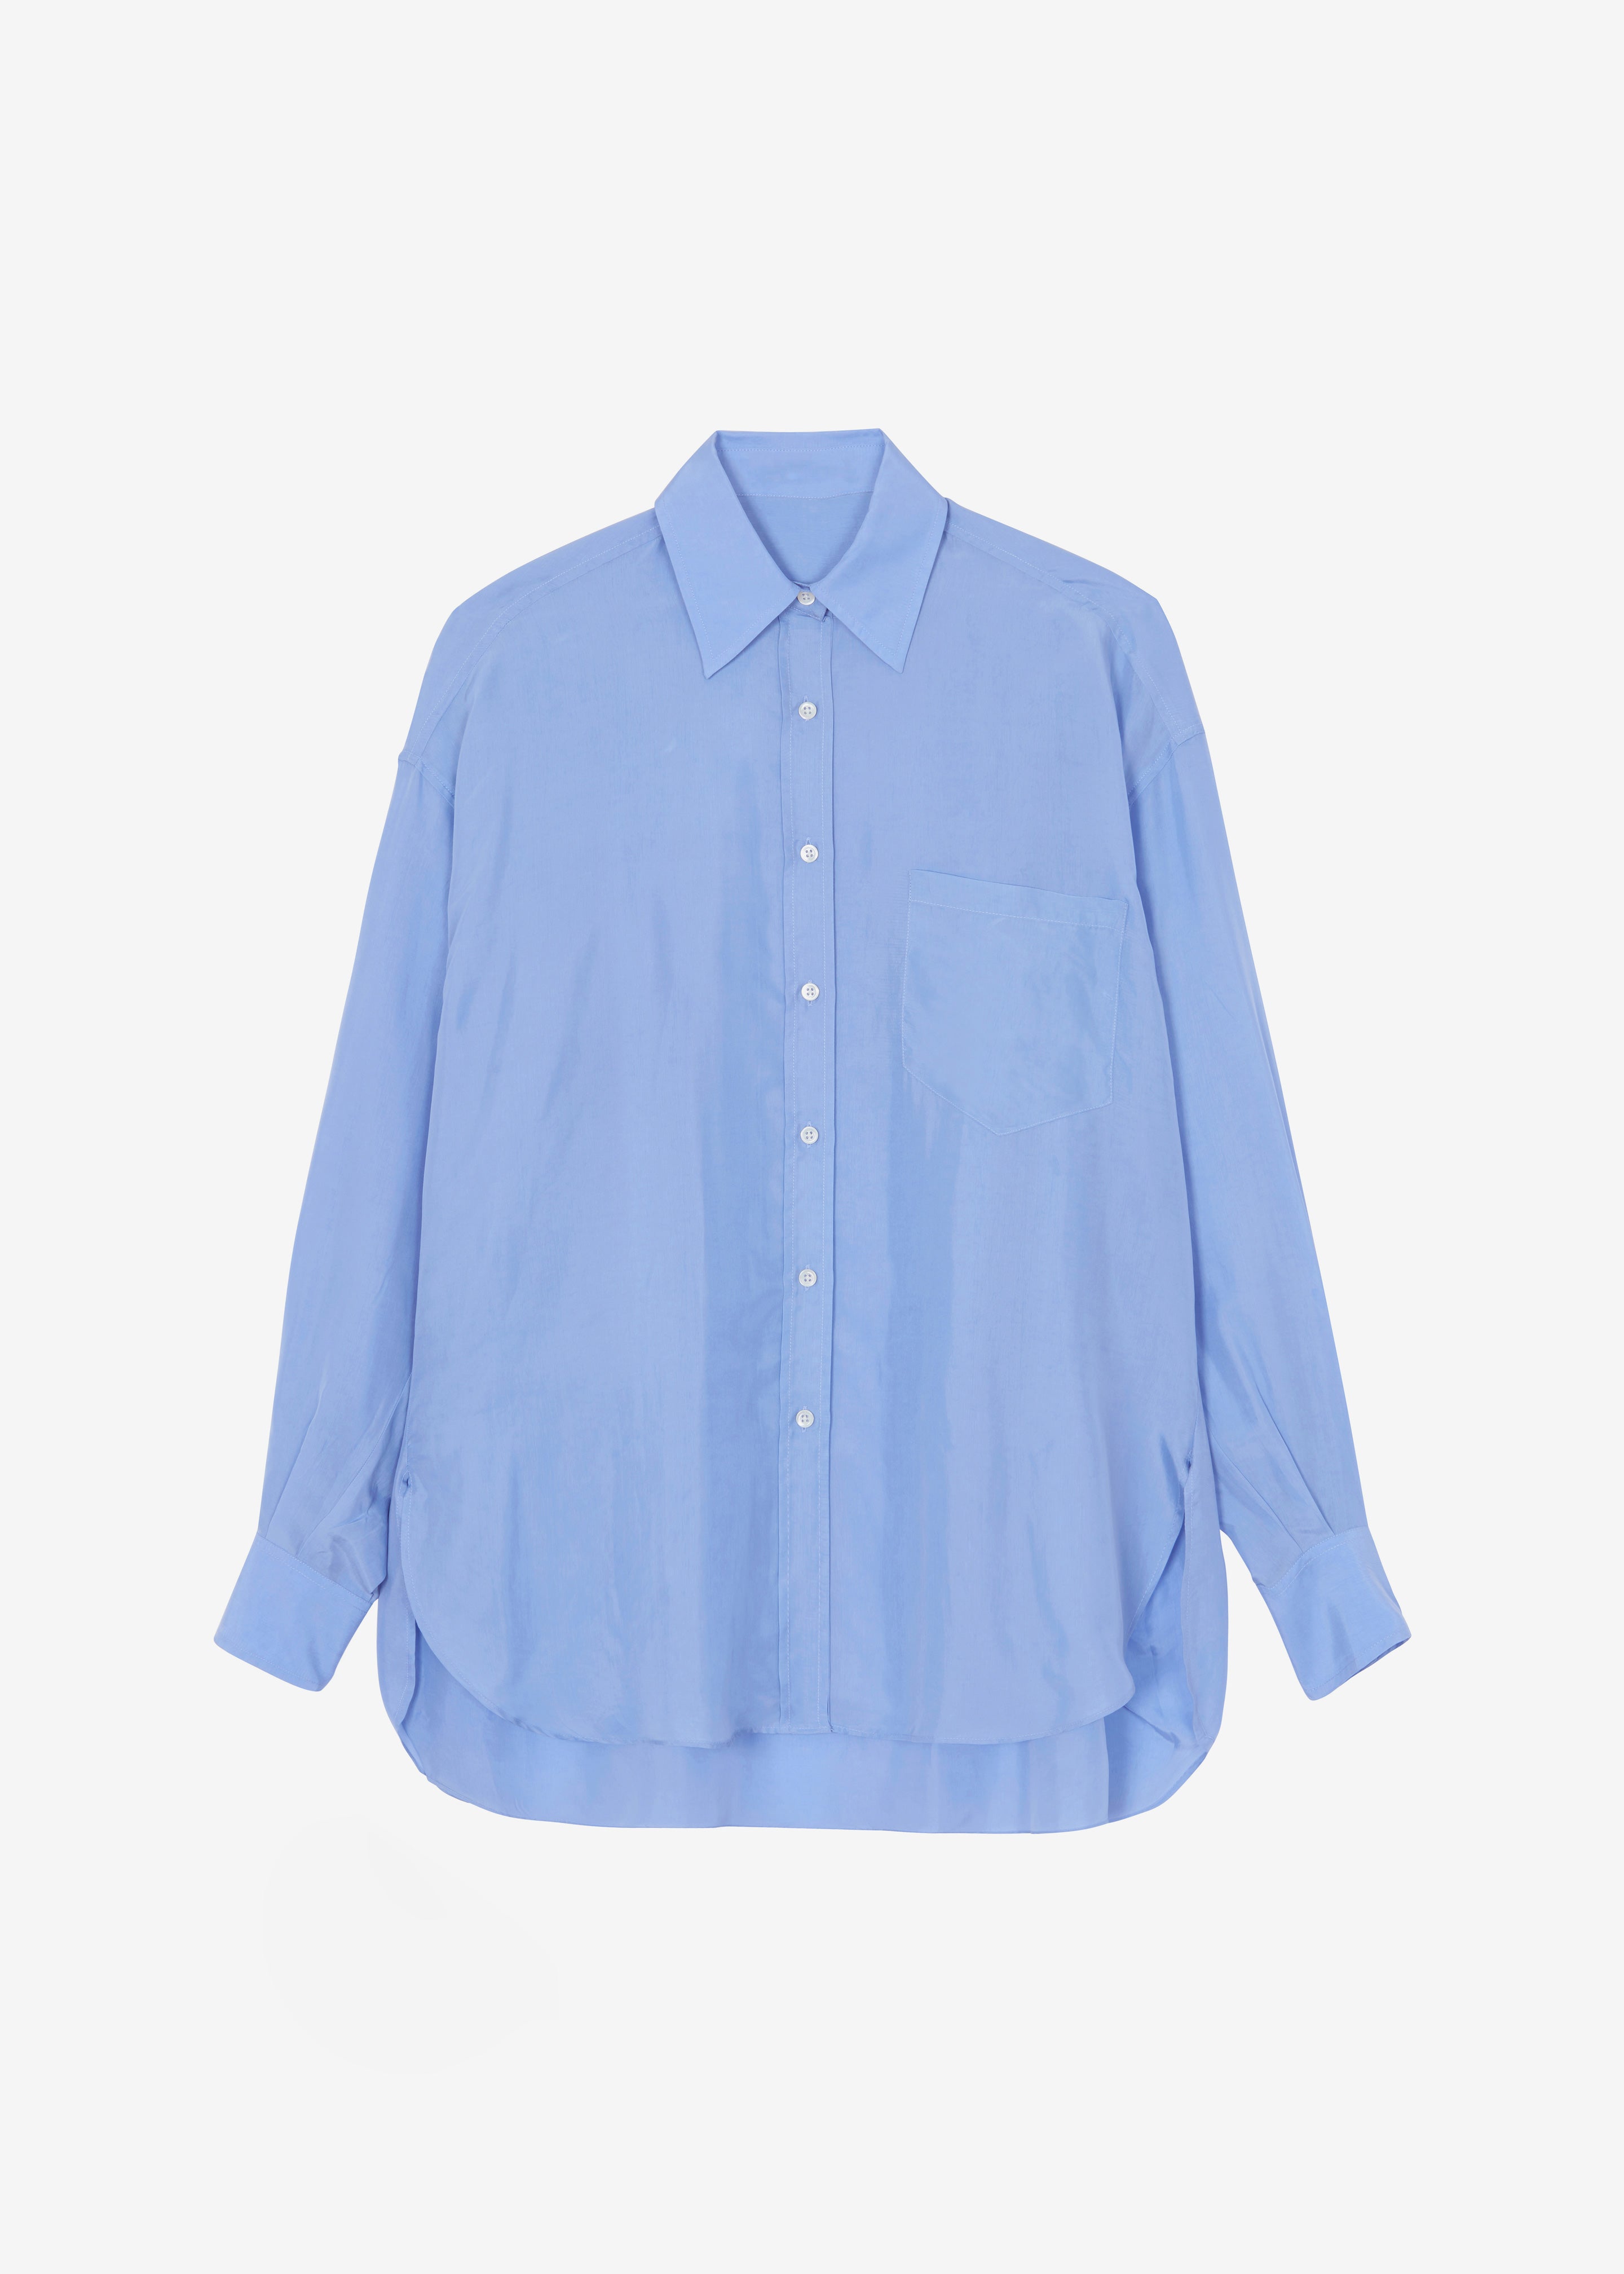 Georgia Silky Shirt - Light Blue - 8